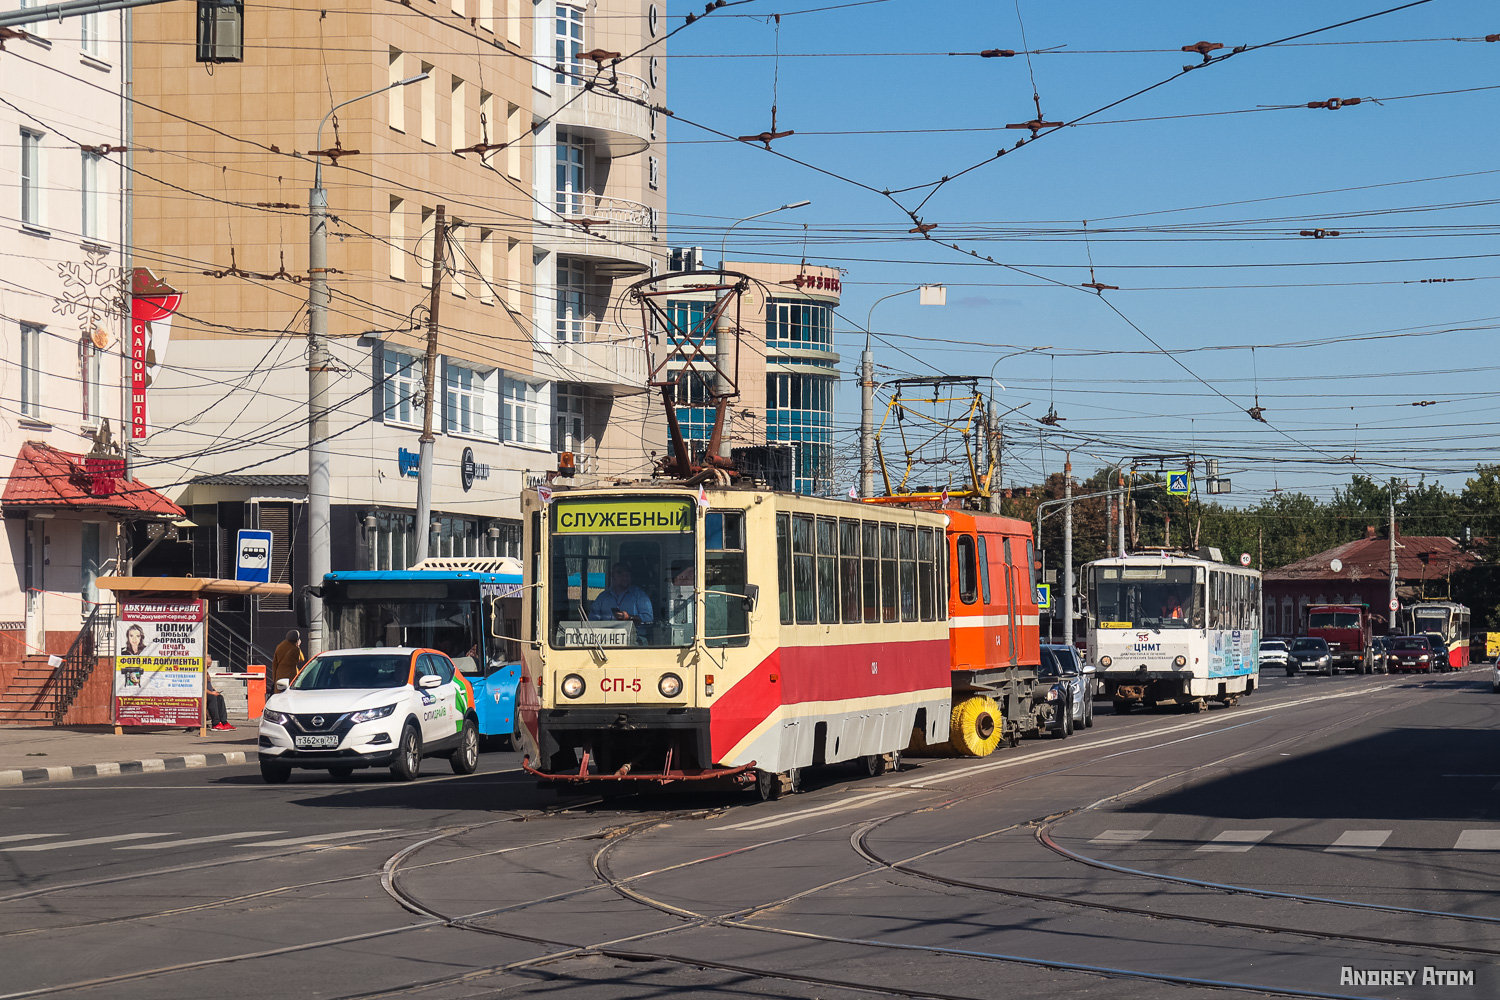 Тула, 71-608К № СП-5; Тула — Выставка трамваев "95 лет на службе городу" 10 сентября 2022 г.